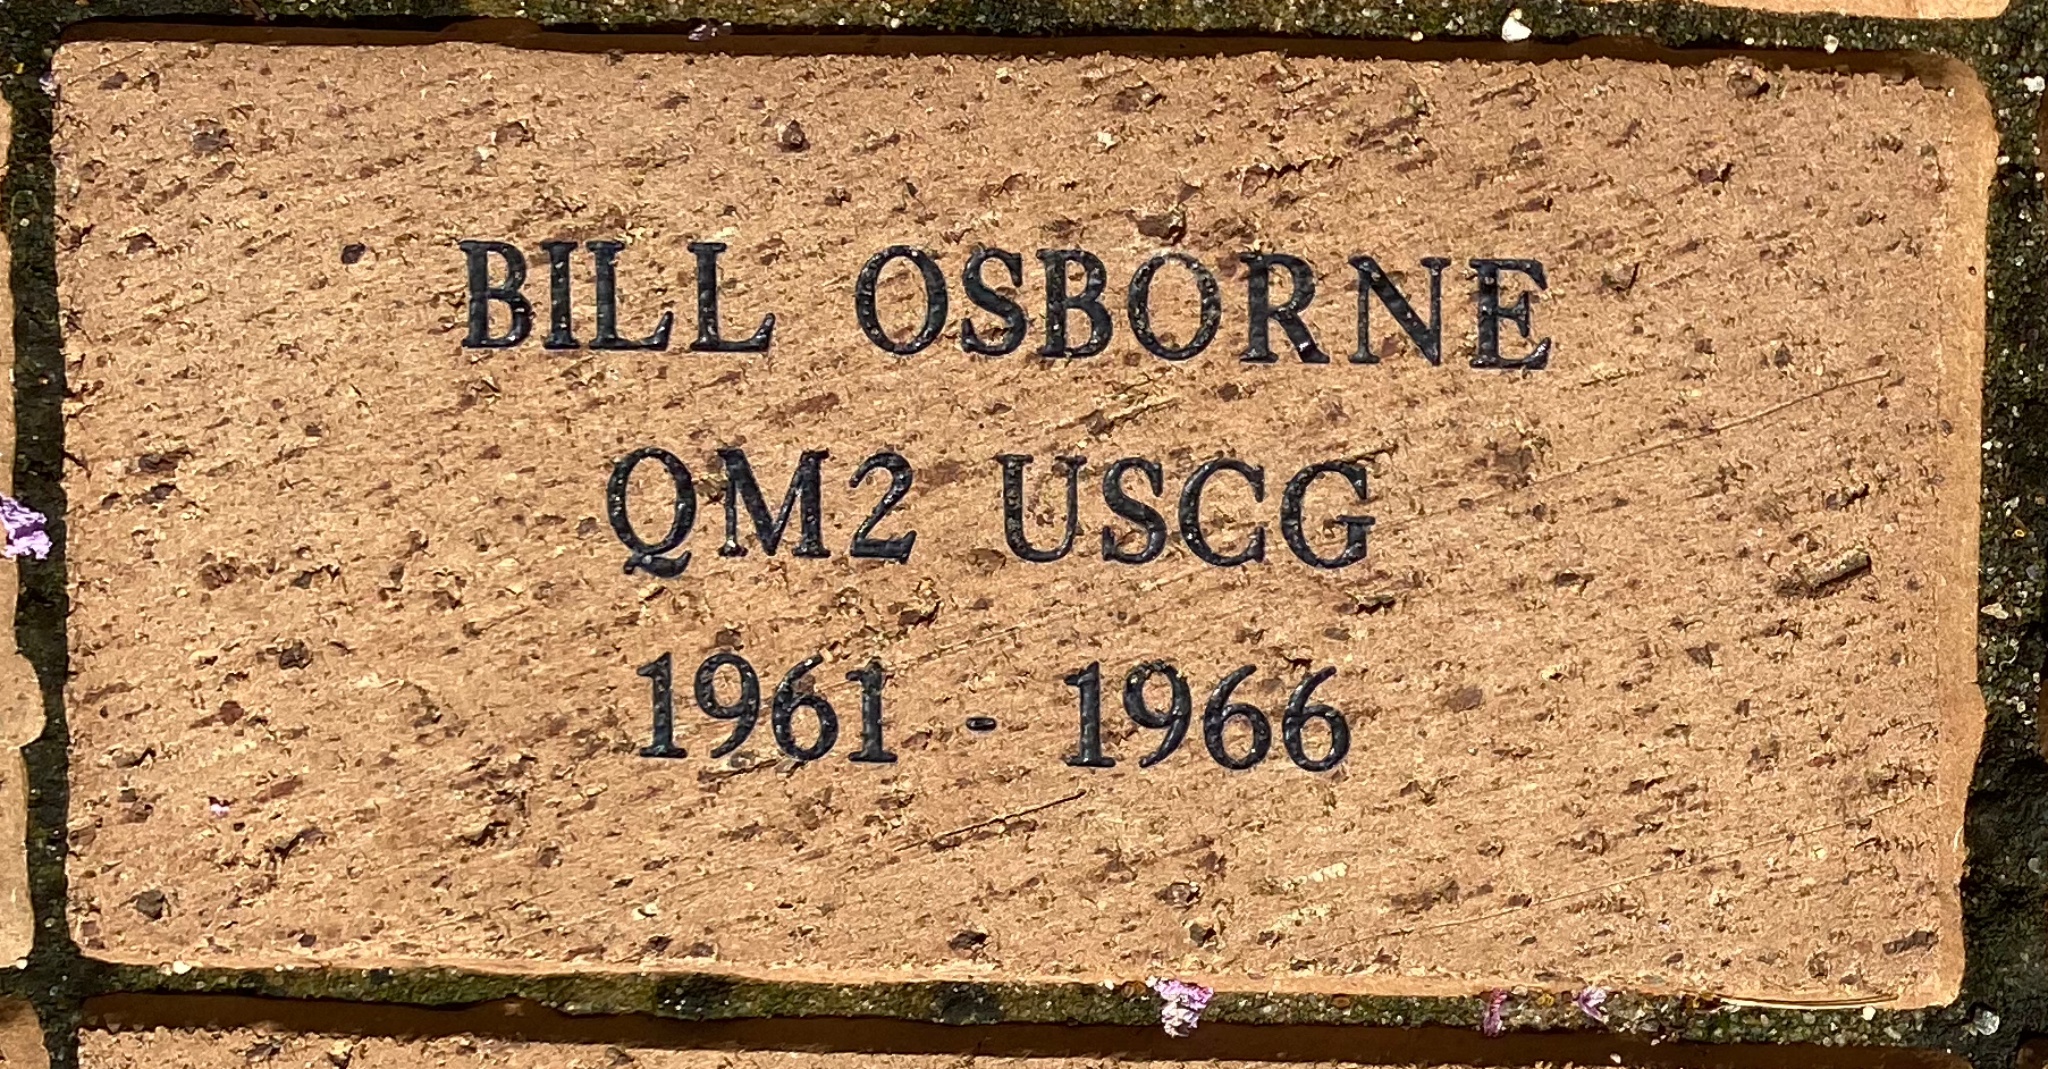 BILL OSBORNE QM2 USCG 1961 – 1966